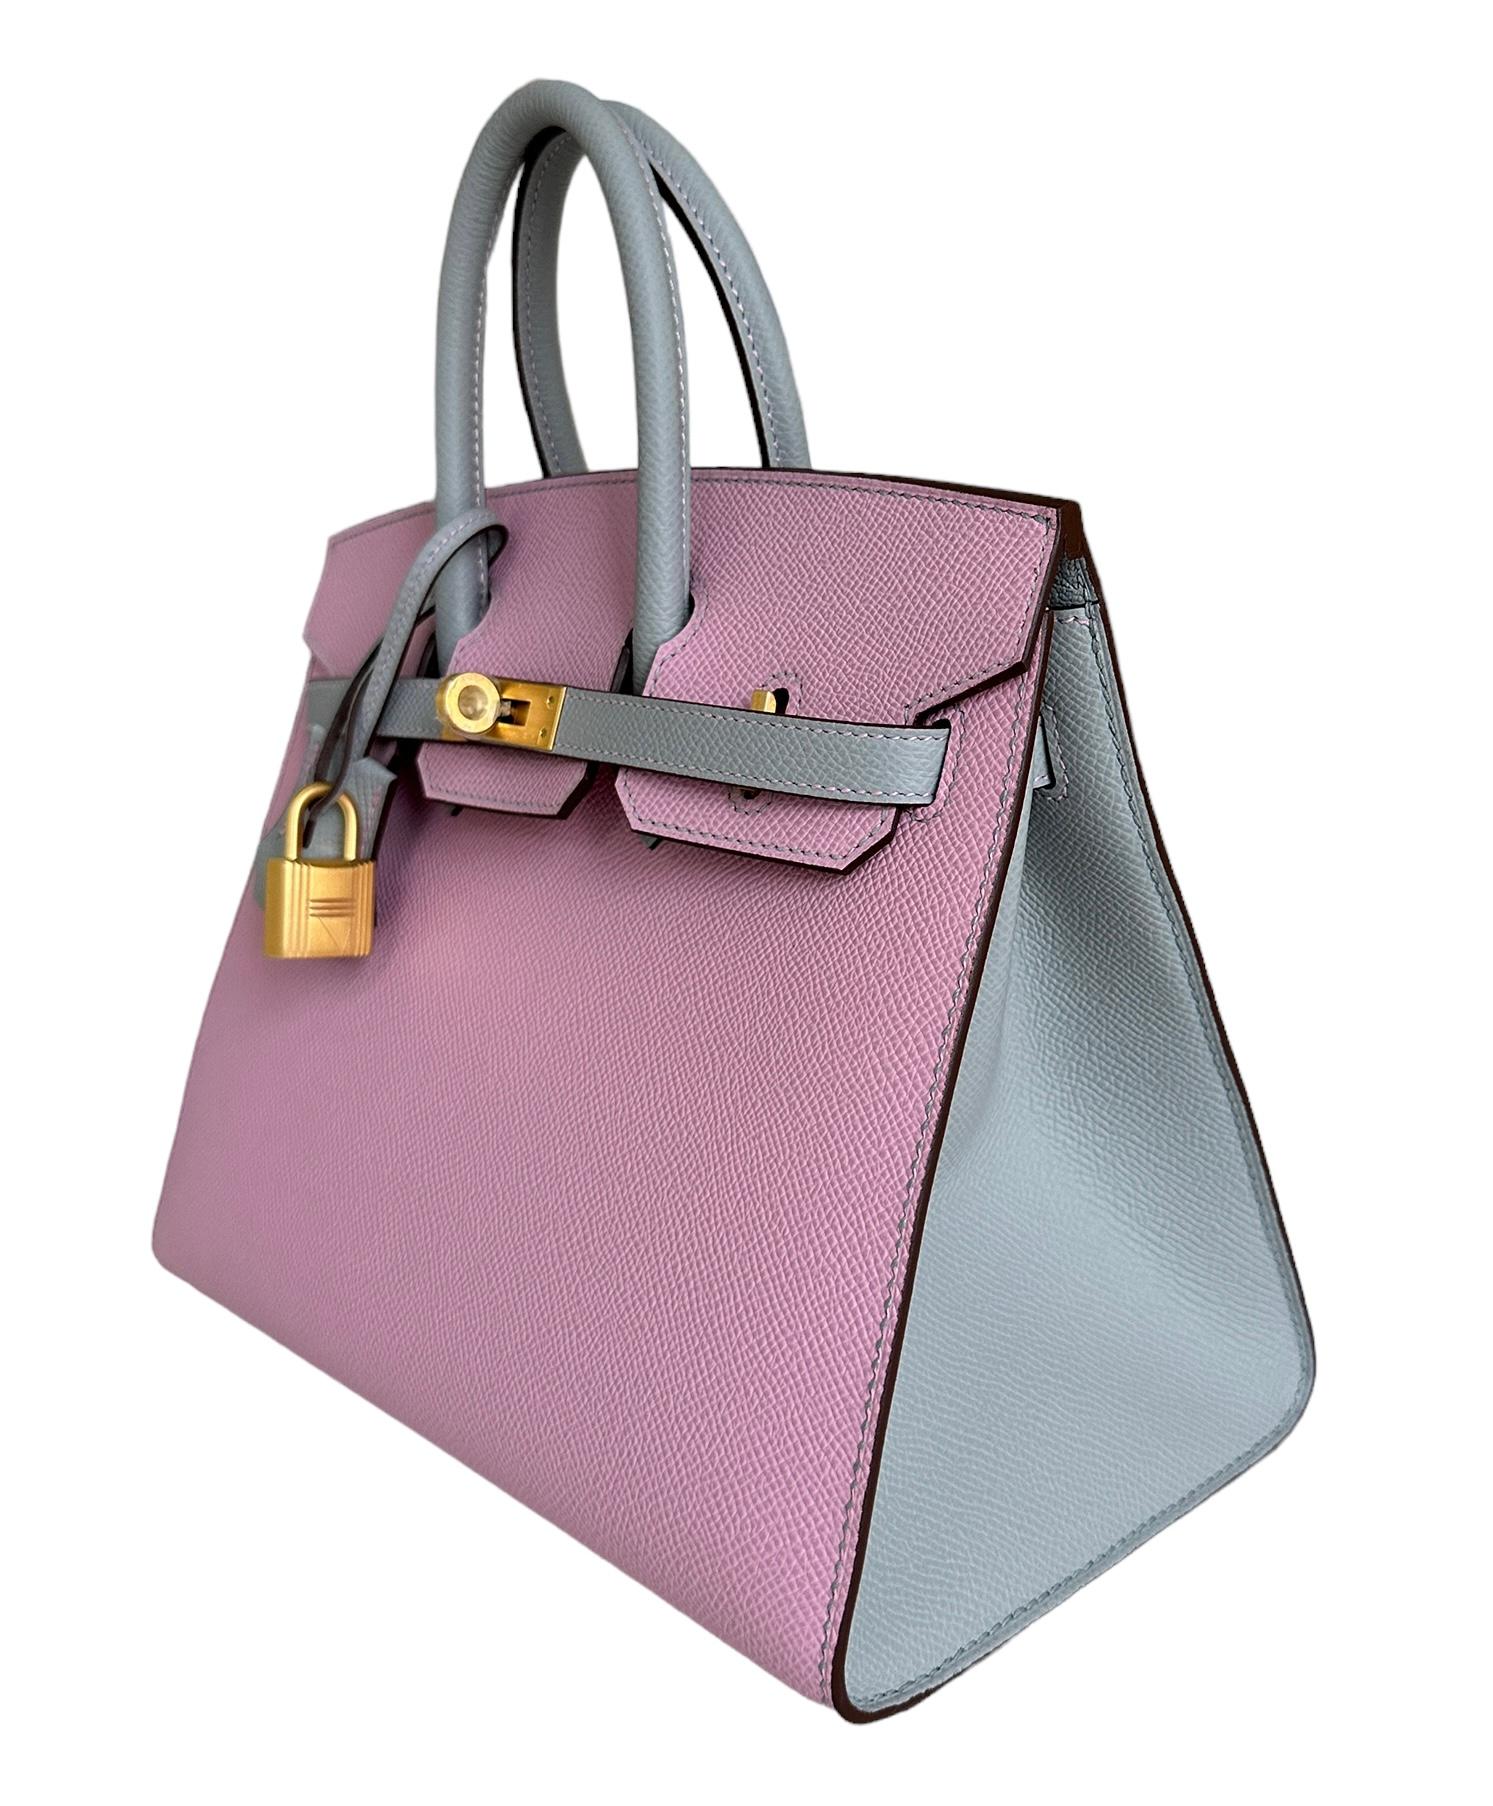 Le Birkin d'Hermès est un sac à main de luxe de la maison de couture Hermès. Il s'agit d'une variante de l'emblématique sac Hermès Birkin, qui a été présenté pour la première fois en 1984 et qui est devenu depuis l'un des sacs à main de luxe les